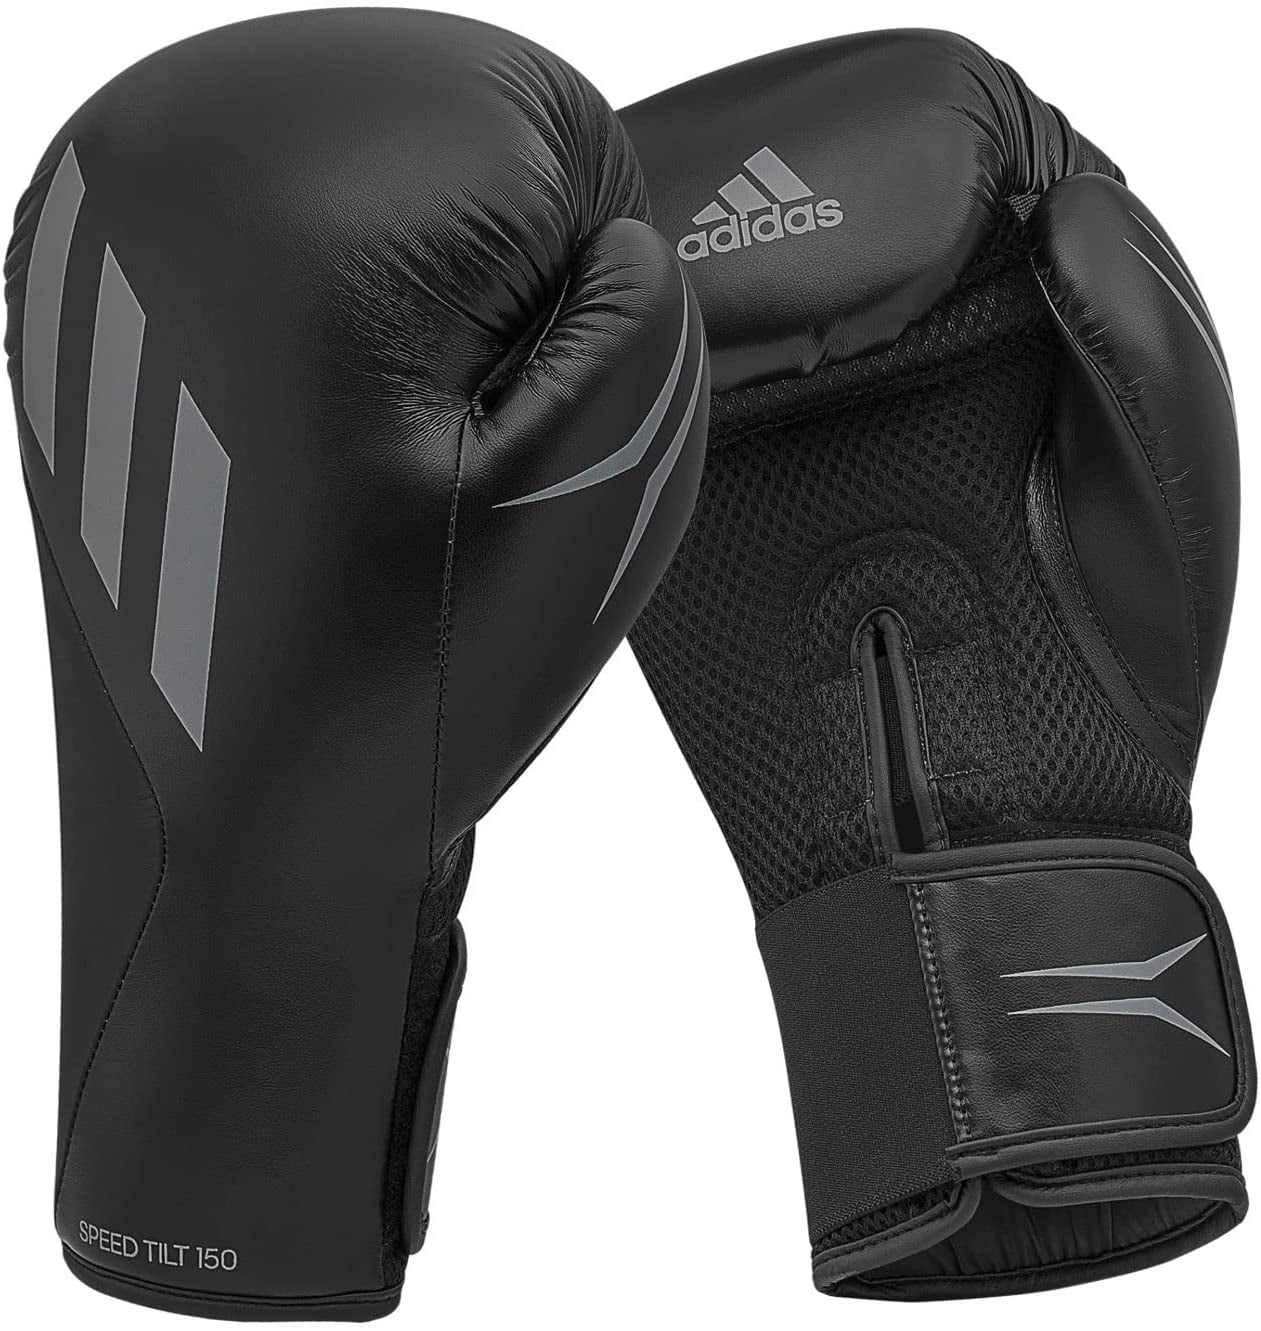 Adidas Speed TILT Mat - Gloves oz Training 150 10 Fighting Women, Unisex, Balck/Gray, Boxing for Gloves and Men